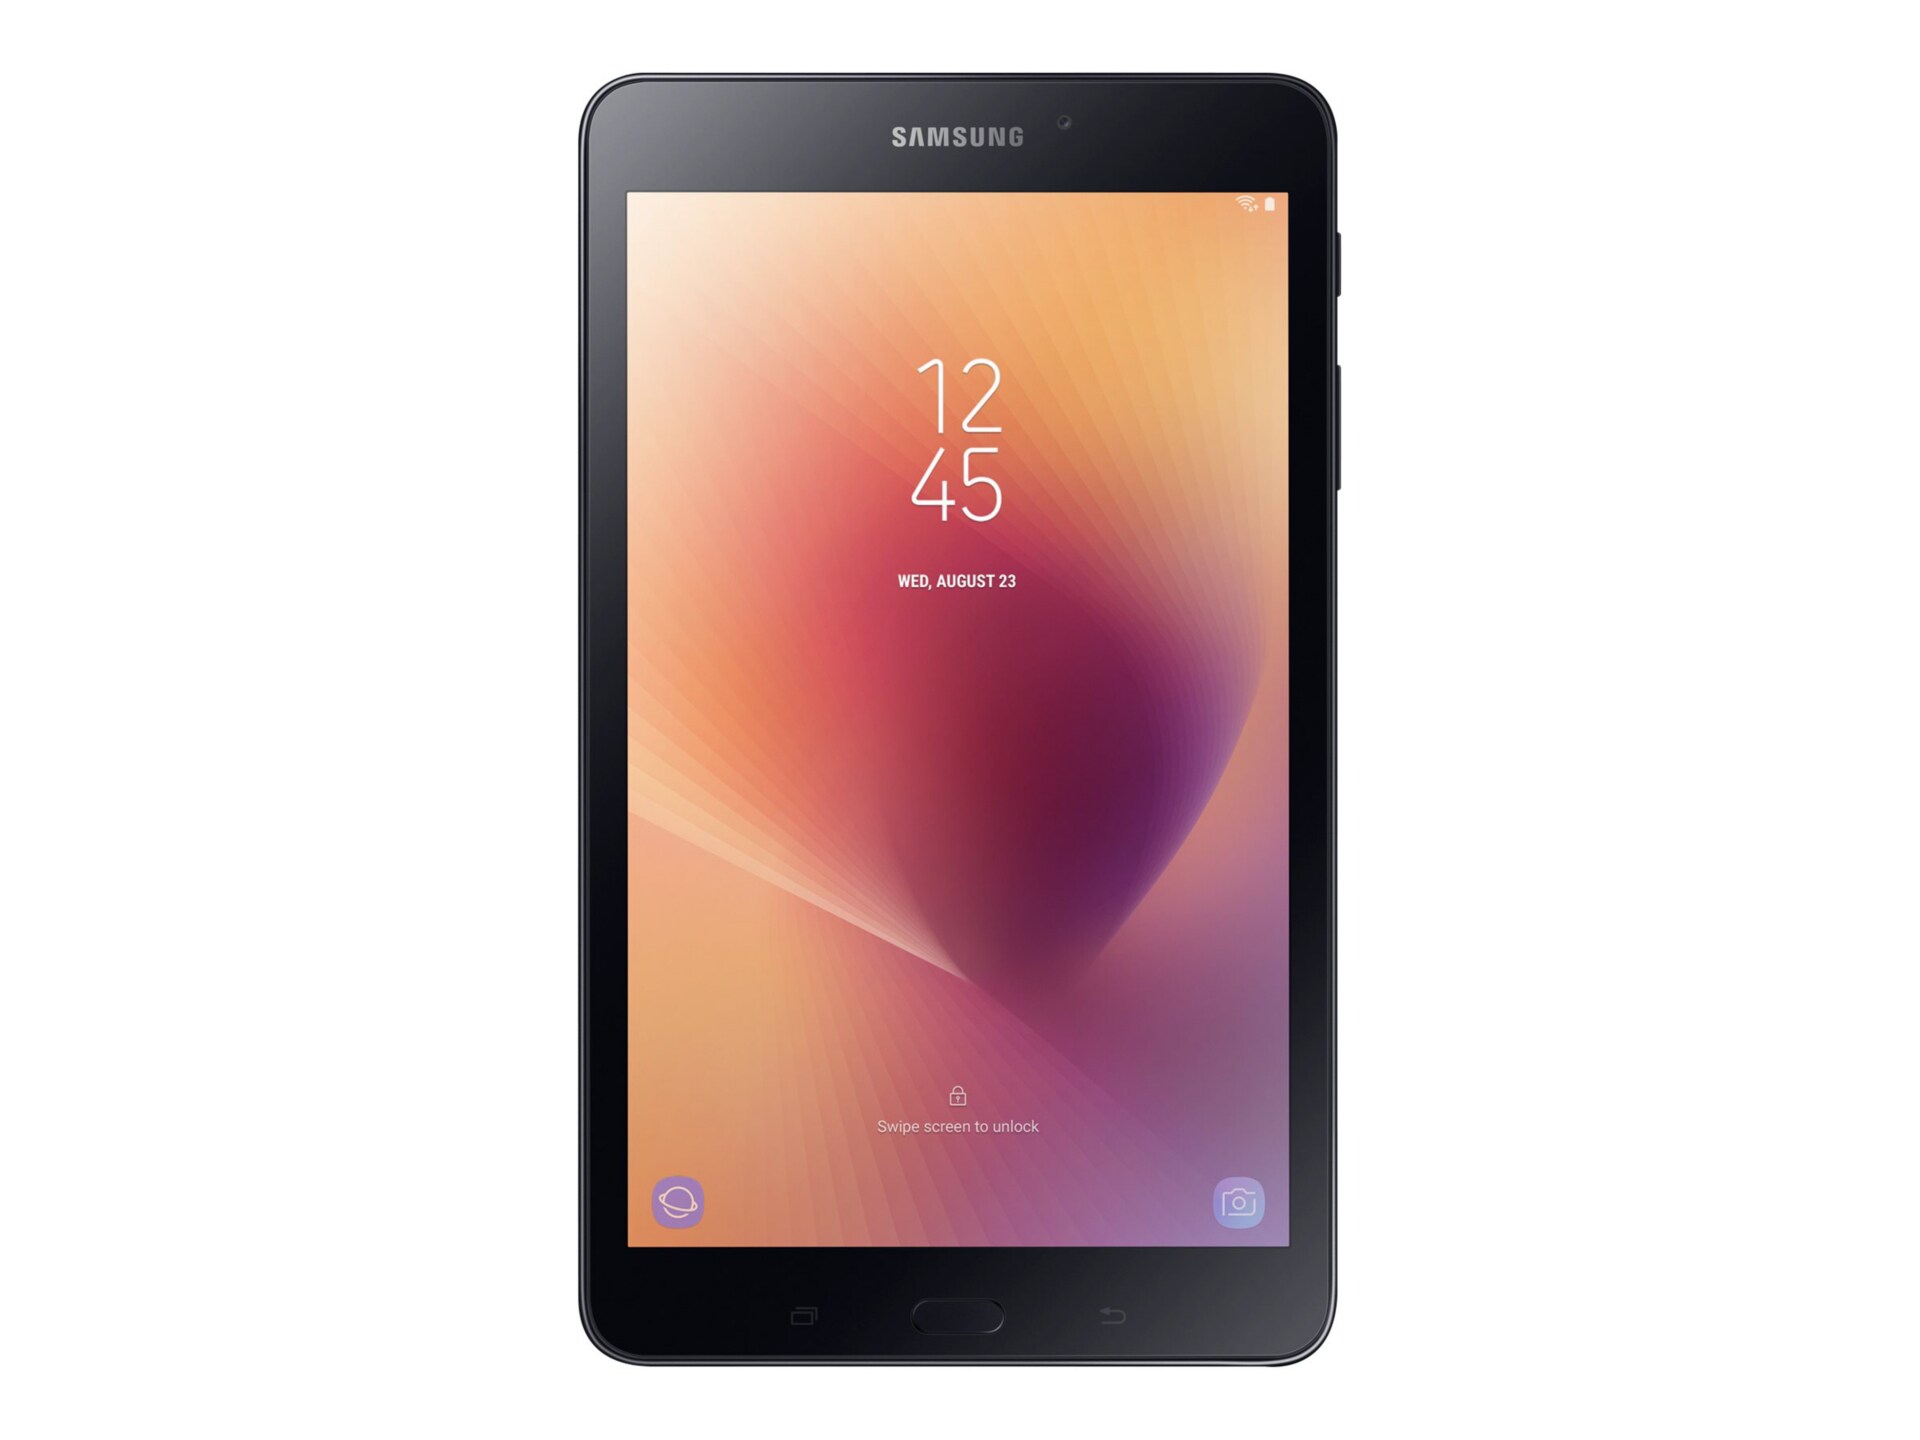 Samsung Galaxy Tab A 8" FHD 16GB 2G/3G/4G - Black